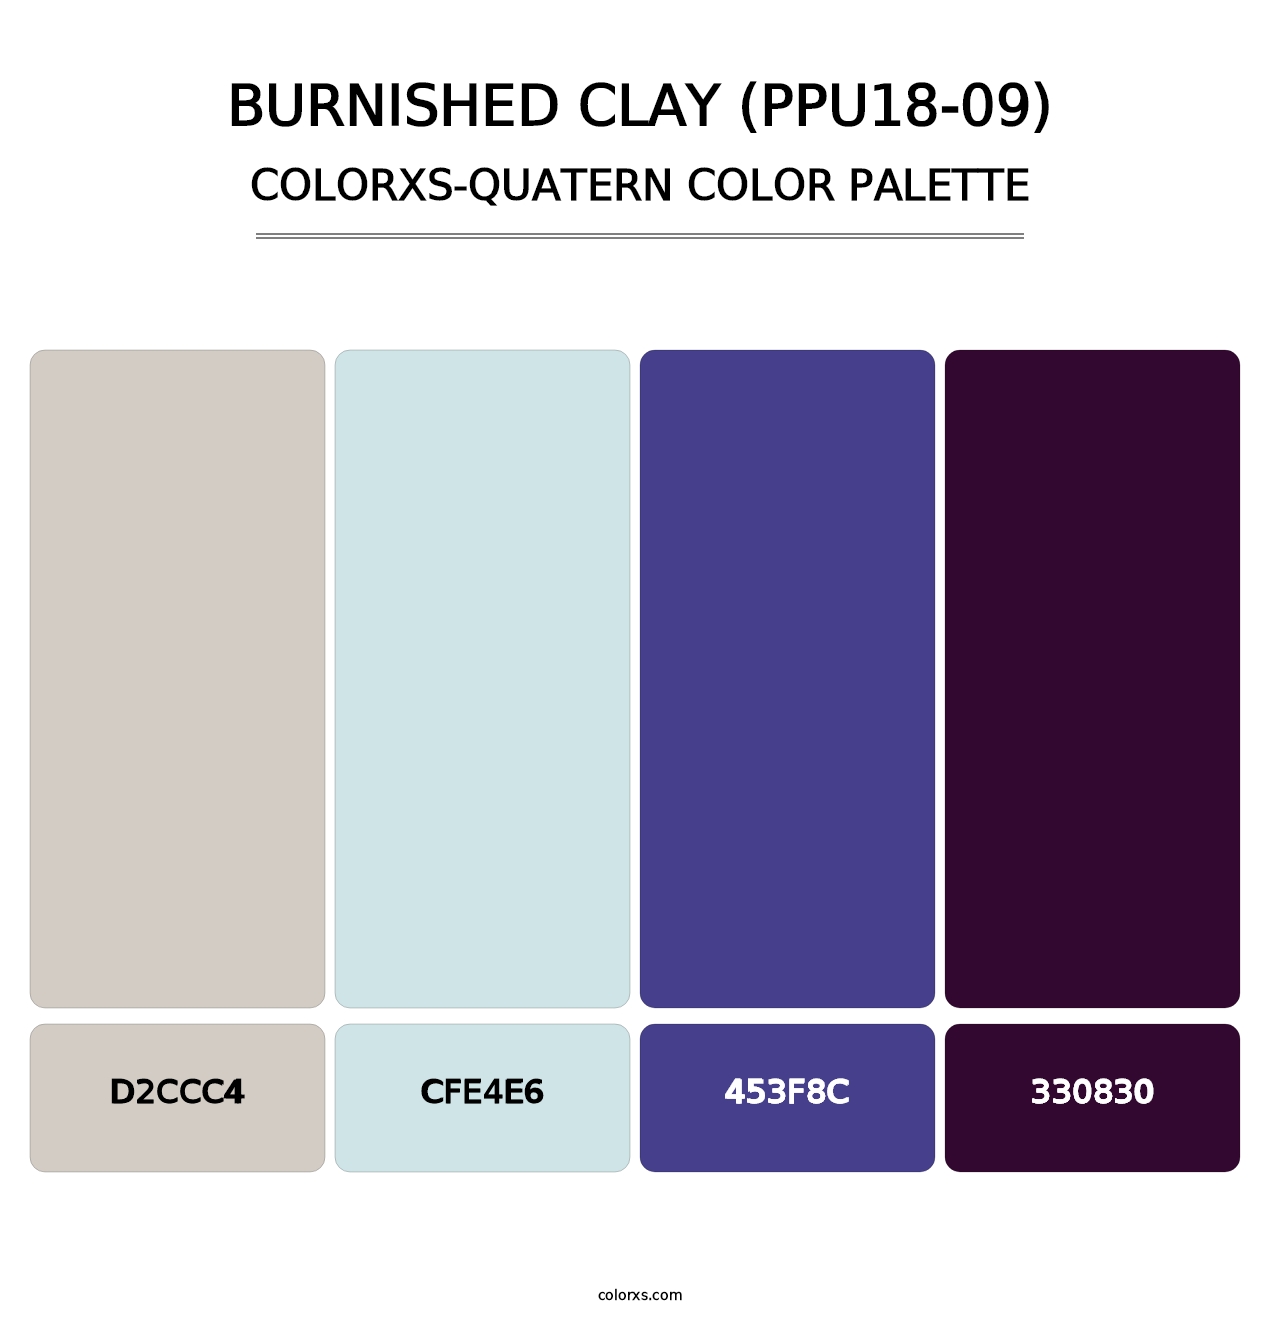 Burnished Clay (PPU18-09) - Colorxs Quatern Palette